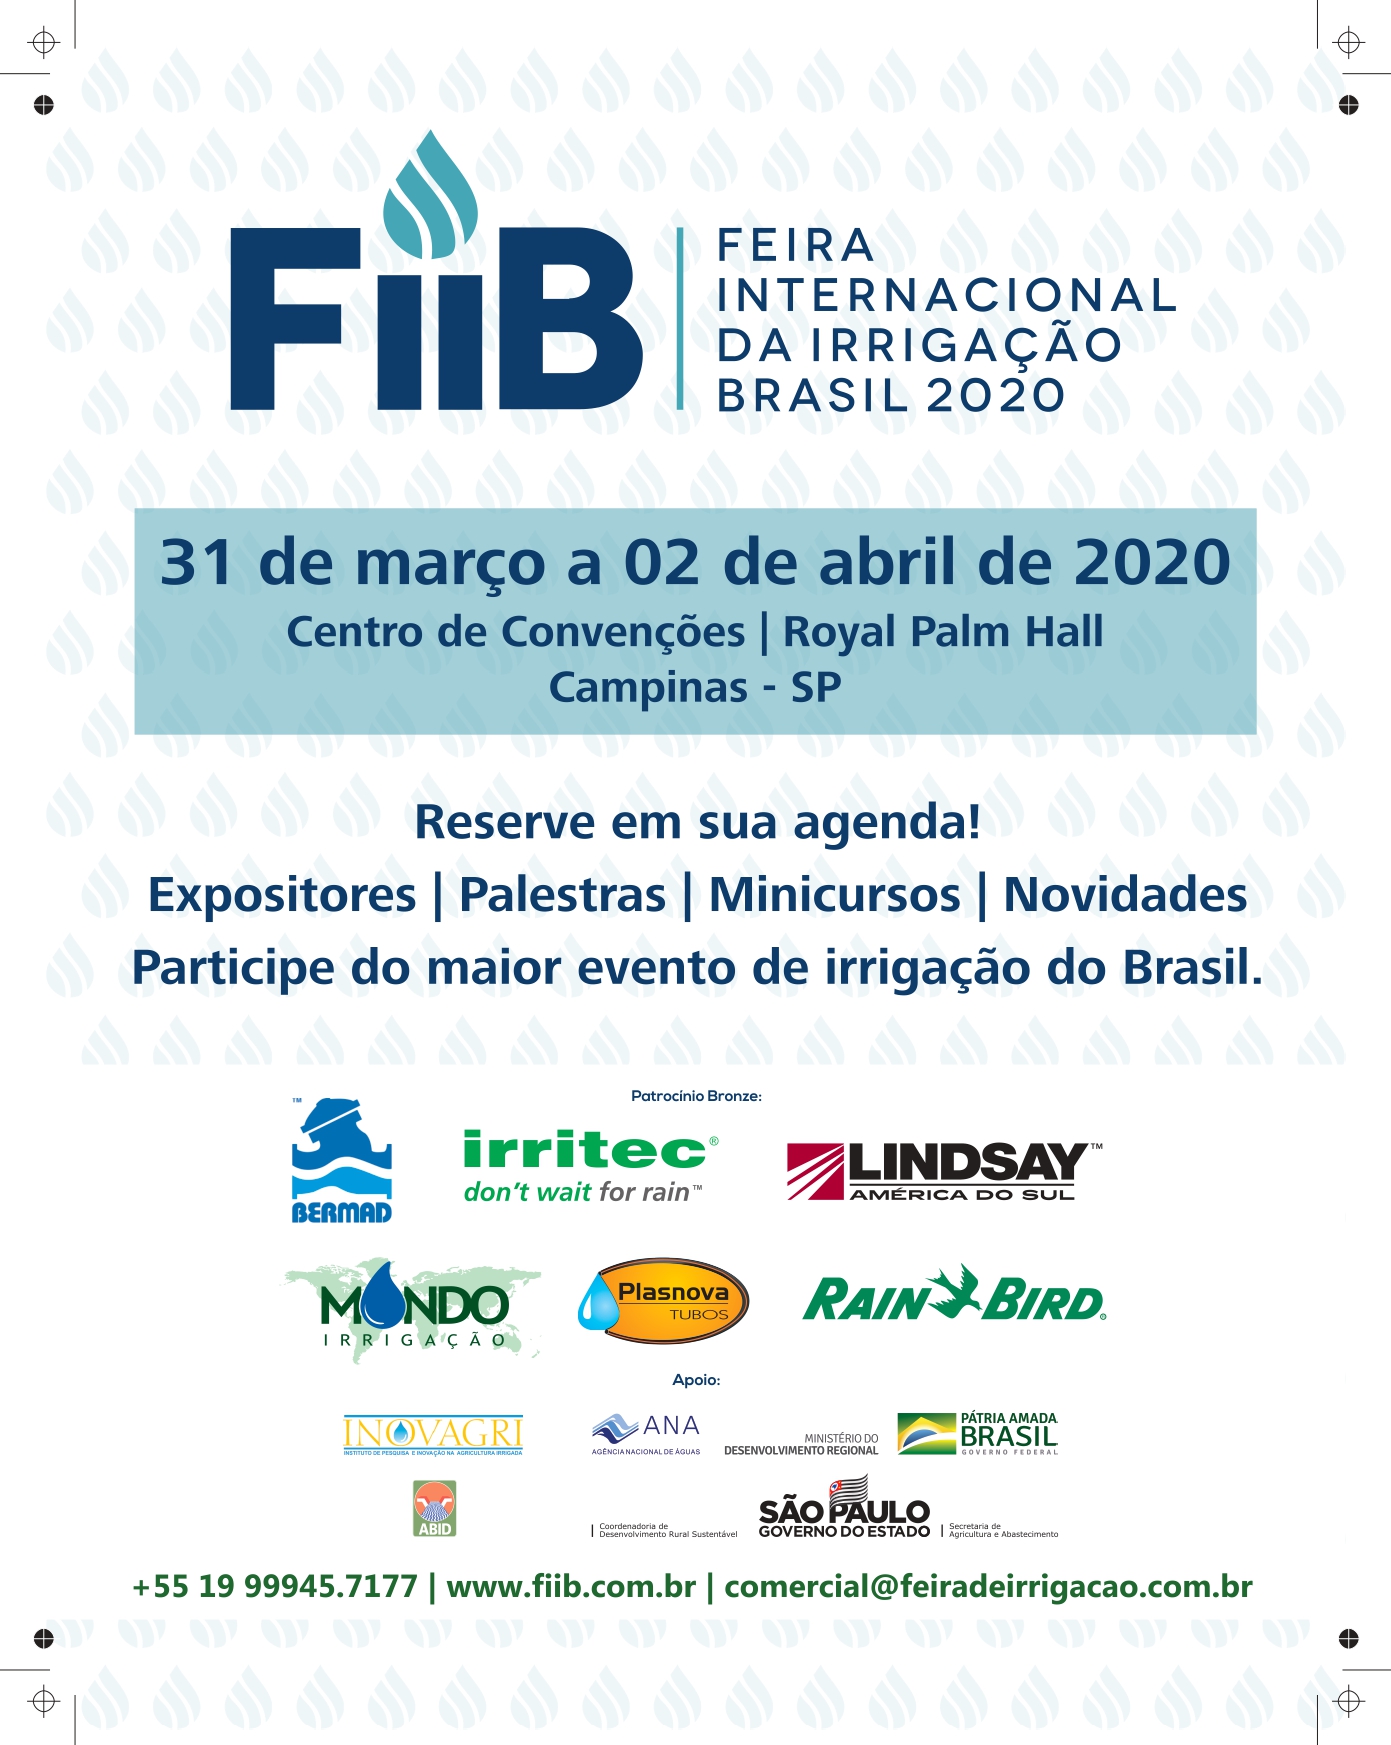 Agende-se para a FIIB - Feira Internacional de Irrigação Brasil 2020